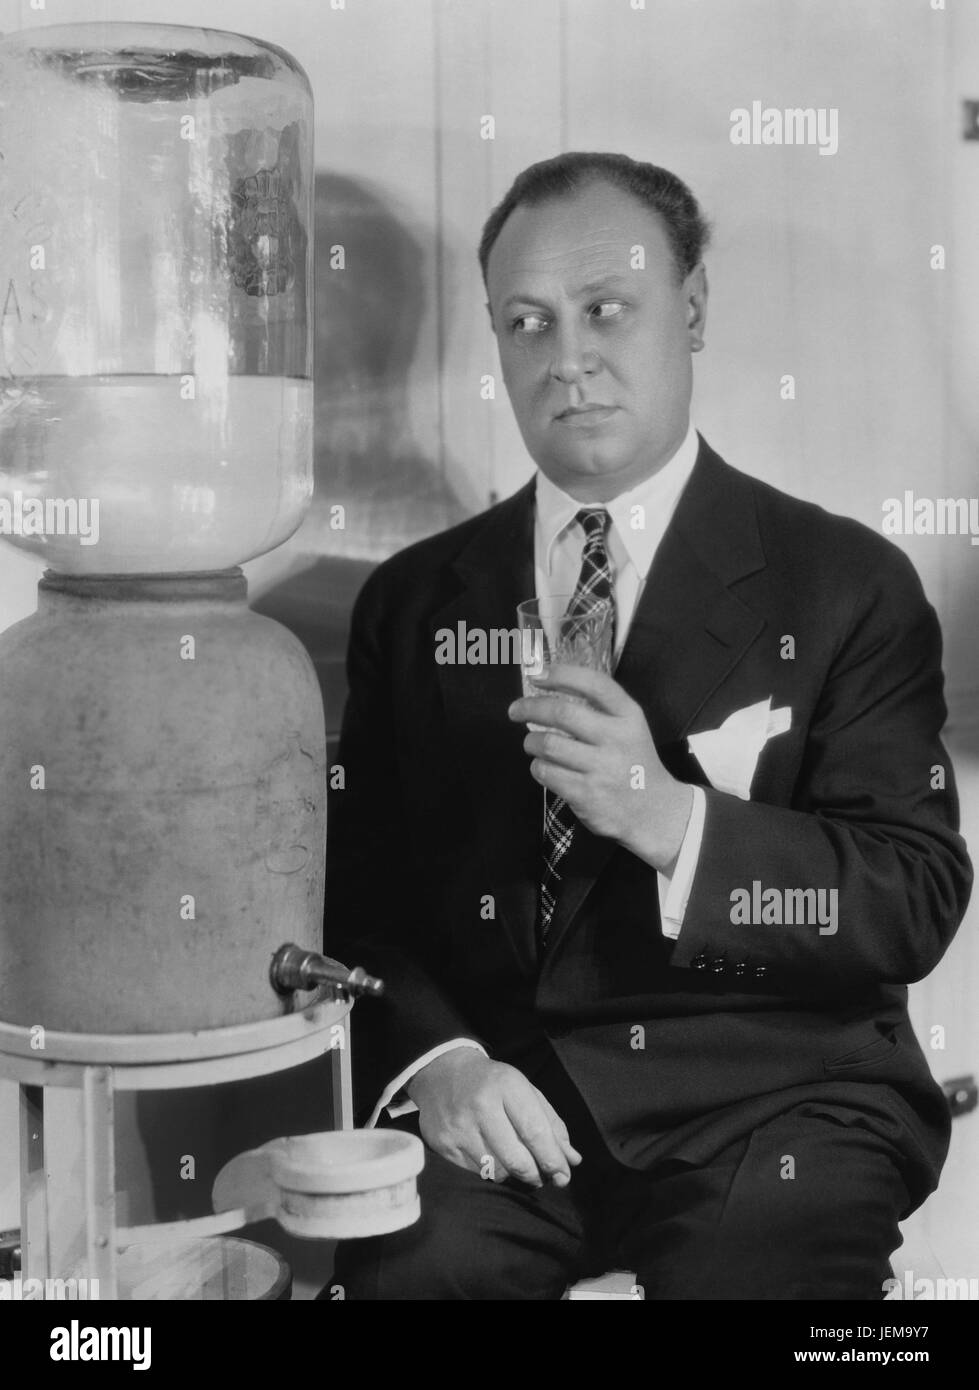 Attore EMIL JANNINGS, pubblicità ritratto al raffreddatore ad acqua, 1929 Foto Stock